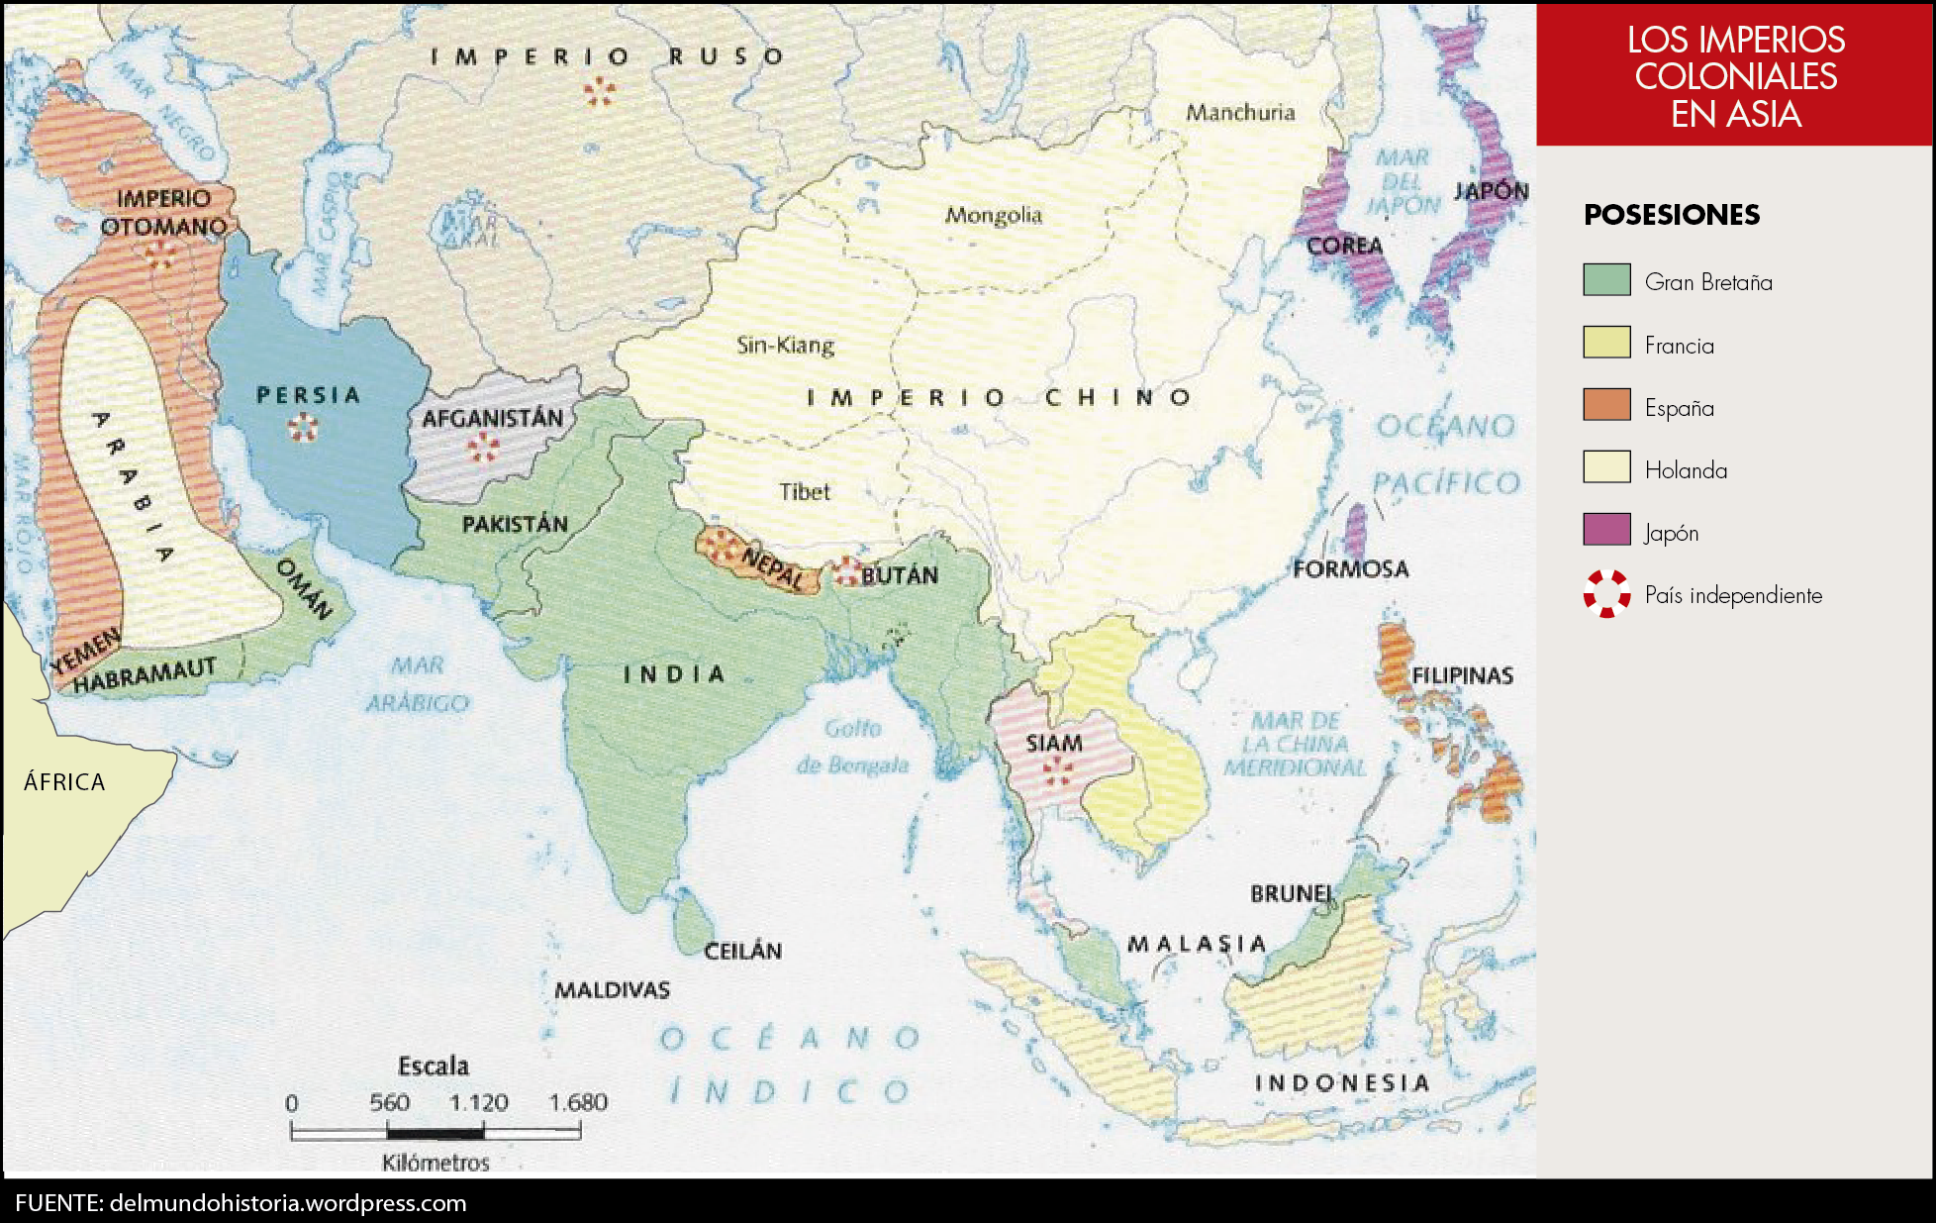 Los imperios coloniales en Asia